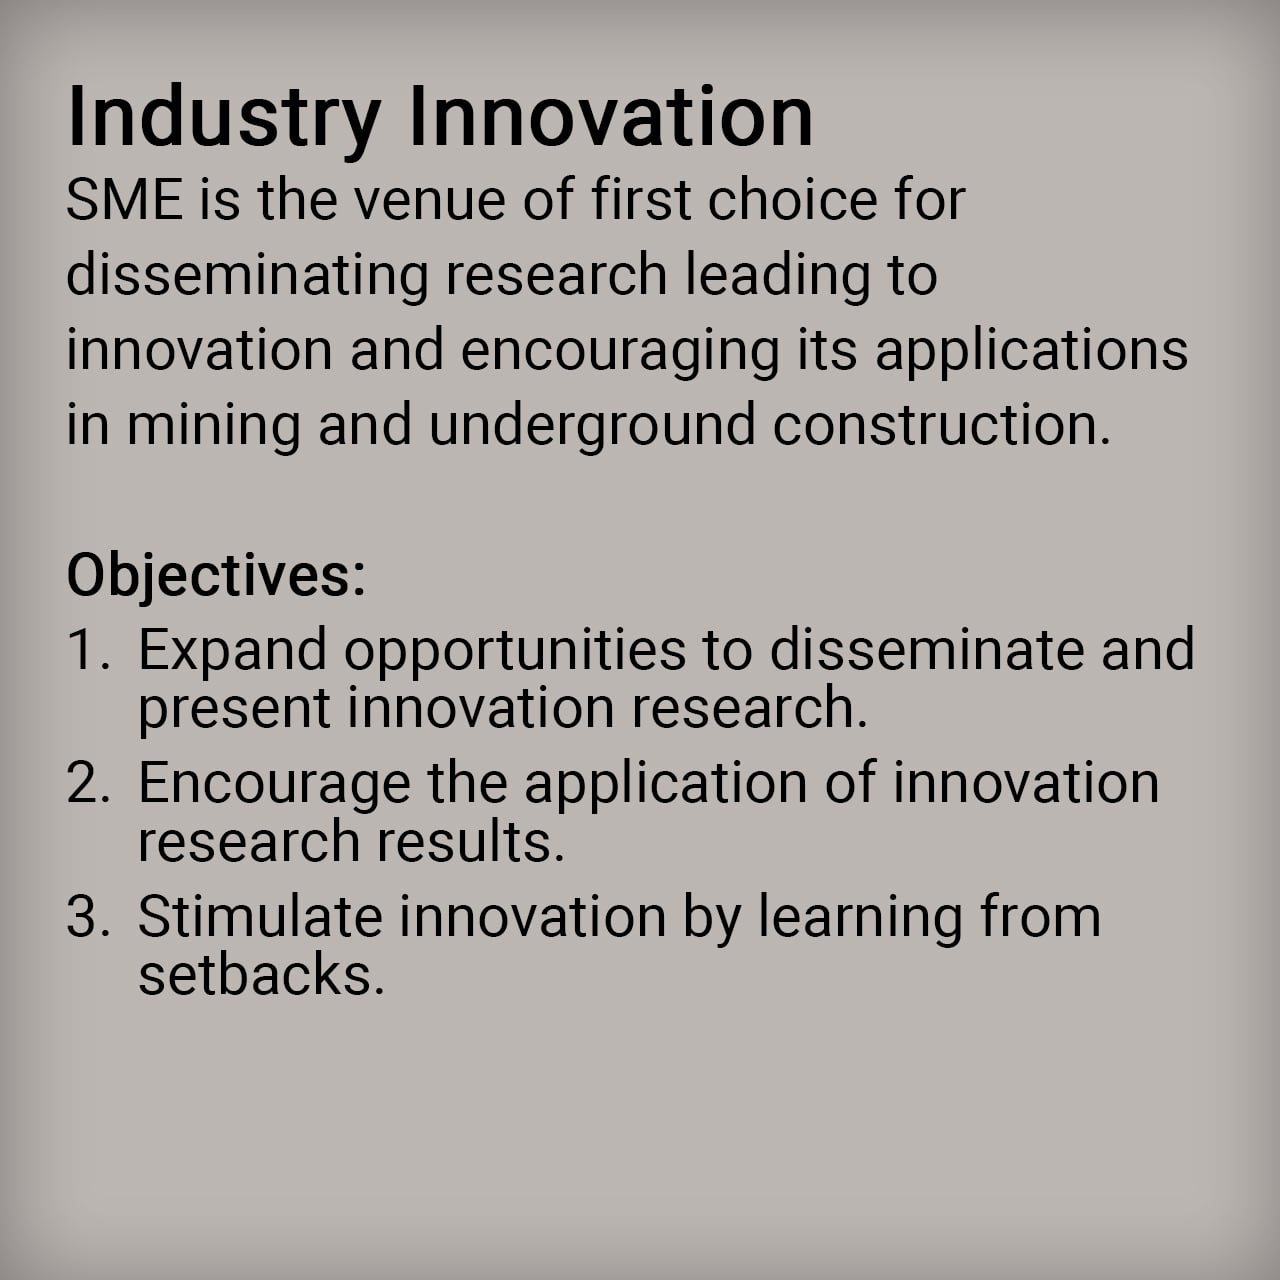 Industry Innovation